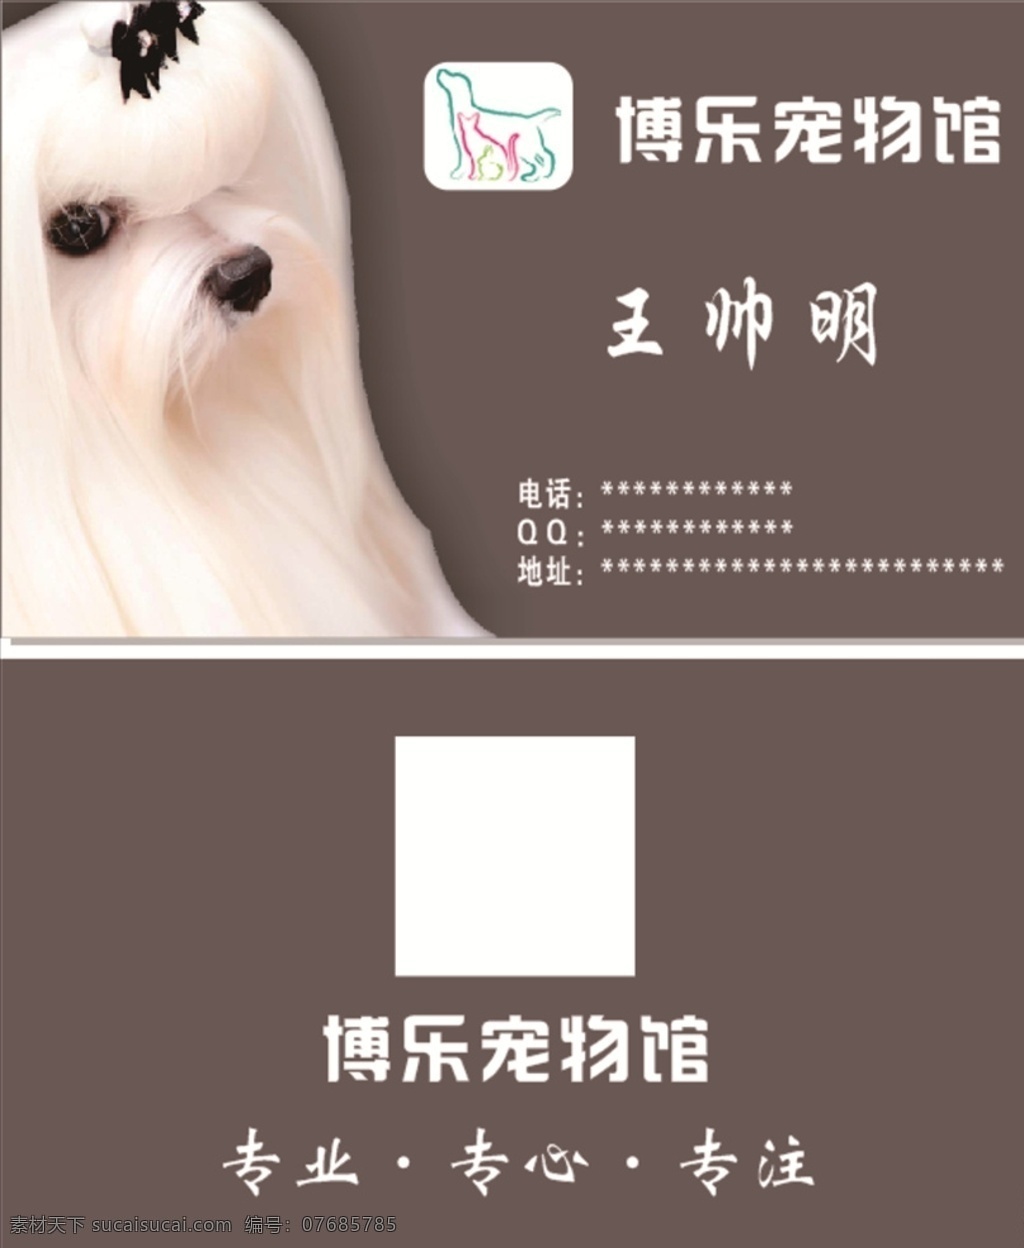 宠物名片 宠物美容 狗狗名片 收售狗 狗名片 印刷品海报类 设计宠物 名片 猫 卡通 可爱 名片卡片